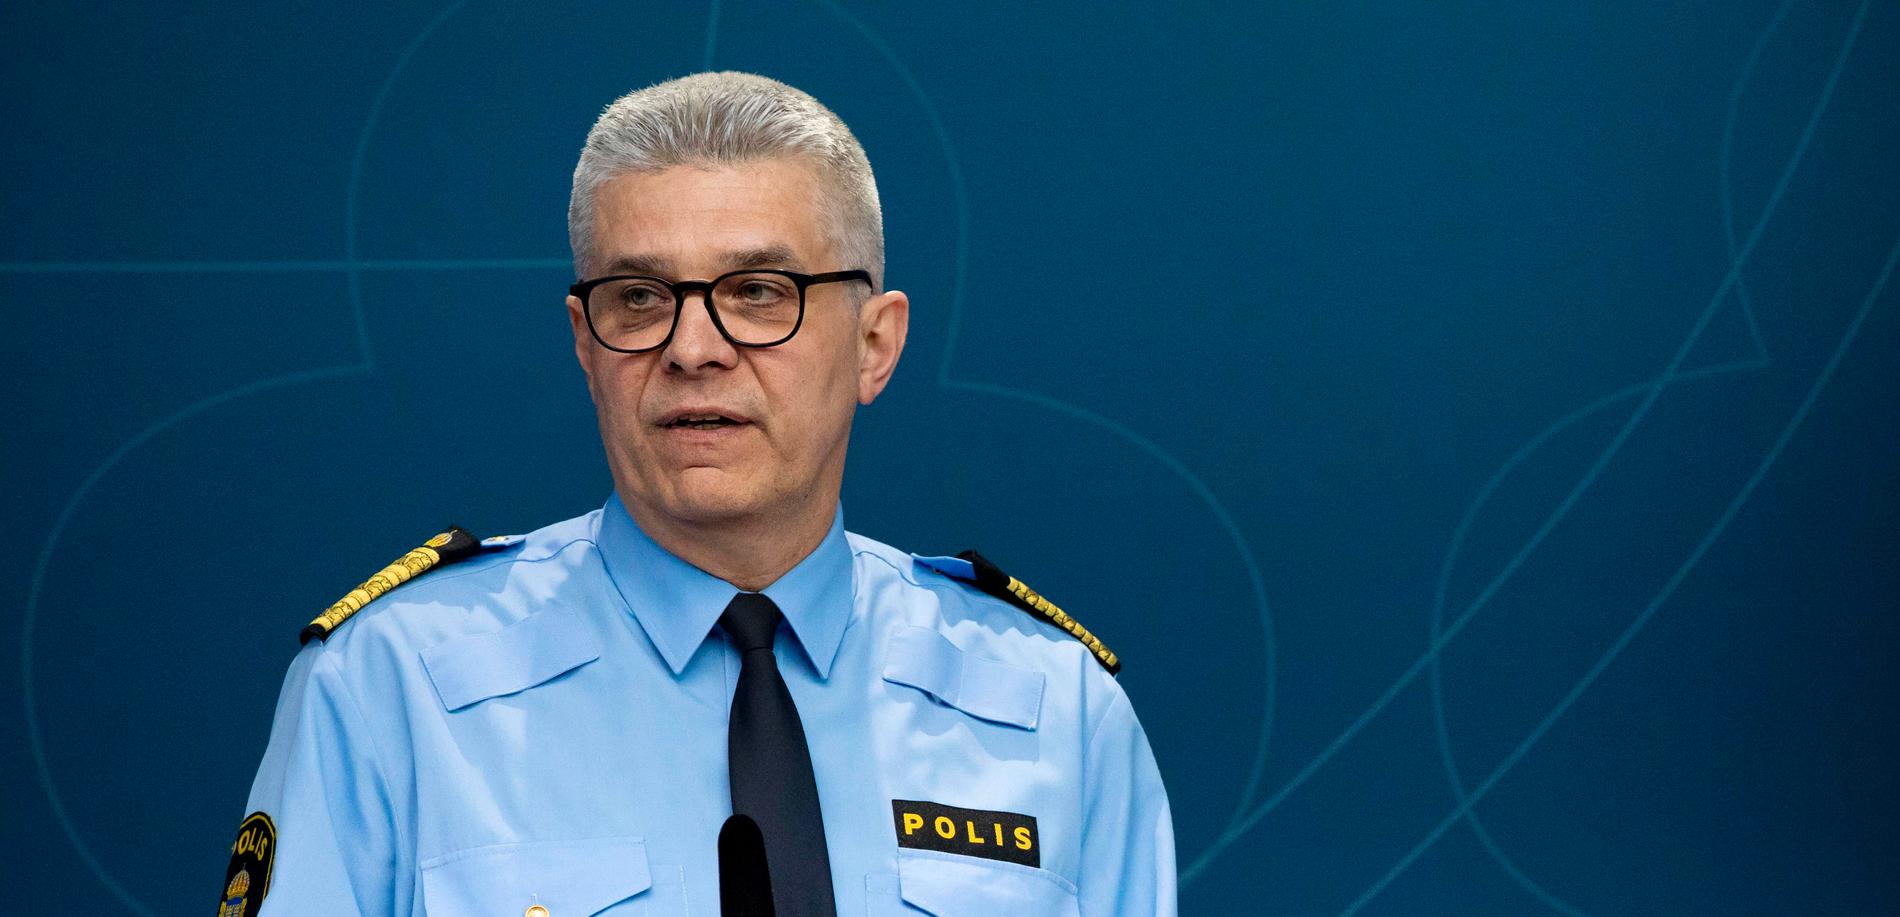 Rikspolischef Anders Thornberg om dödsskjutningarna: ”Kommer aldrig vända om vi inte bryter gängkriminaliteten”. 